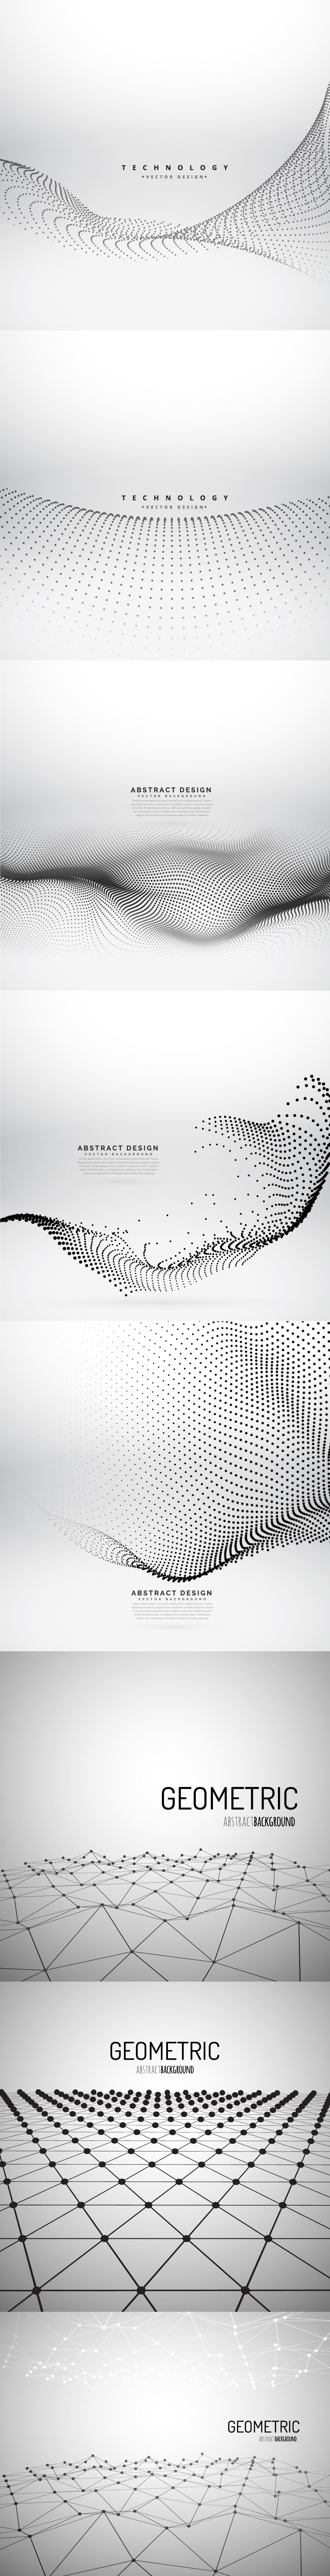 21个抽象的高级科技风格的矢量纹理背景大集合abstract